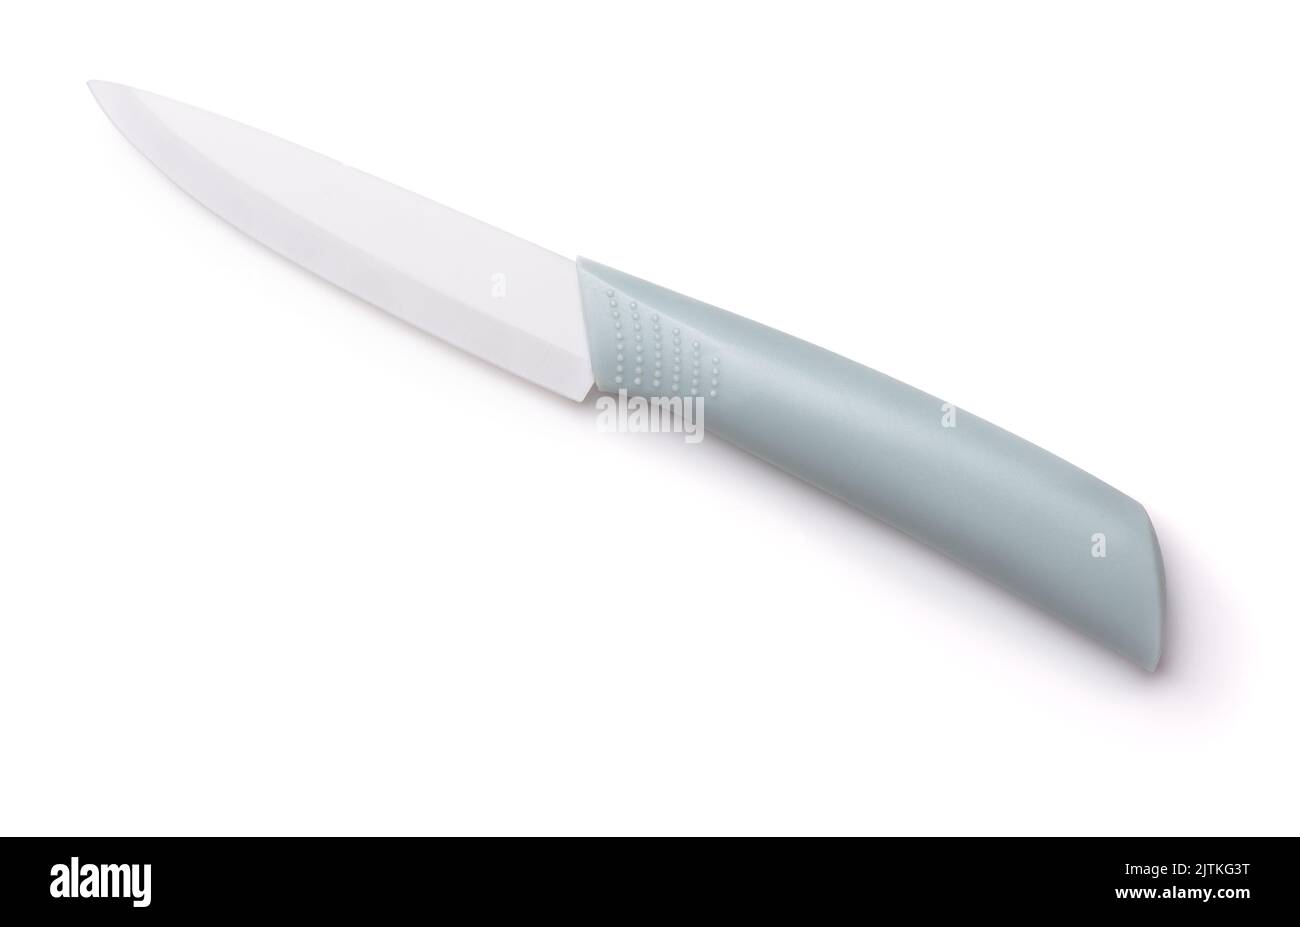 Lame de couteau de cuisine en céramique blanc isolated on white Banque D'Images